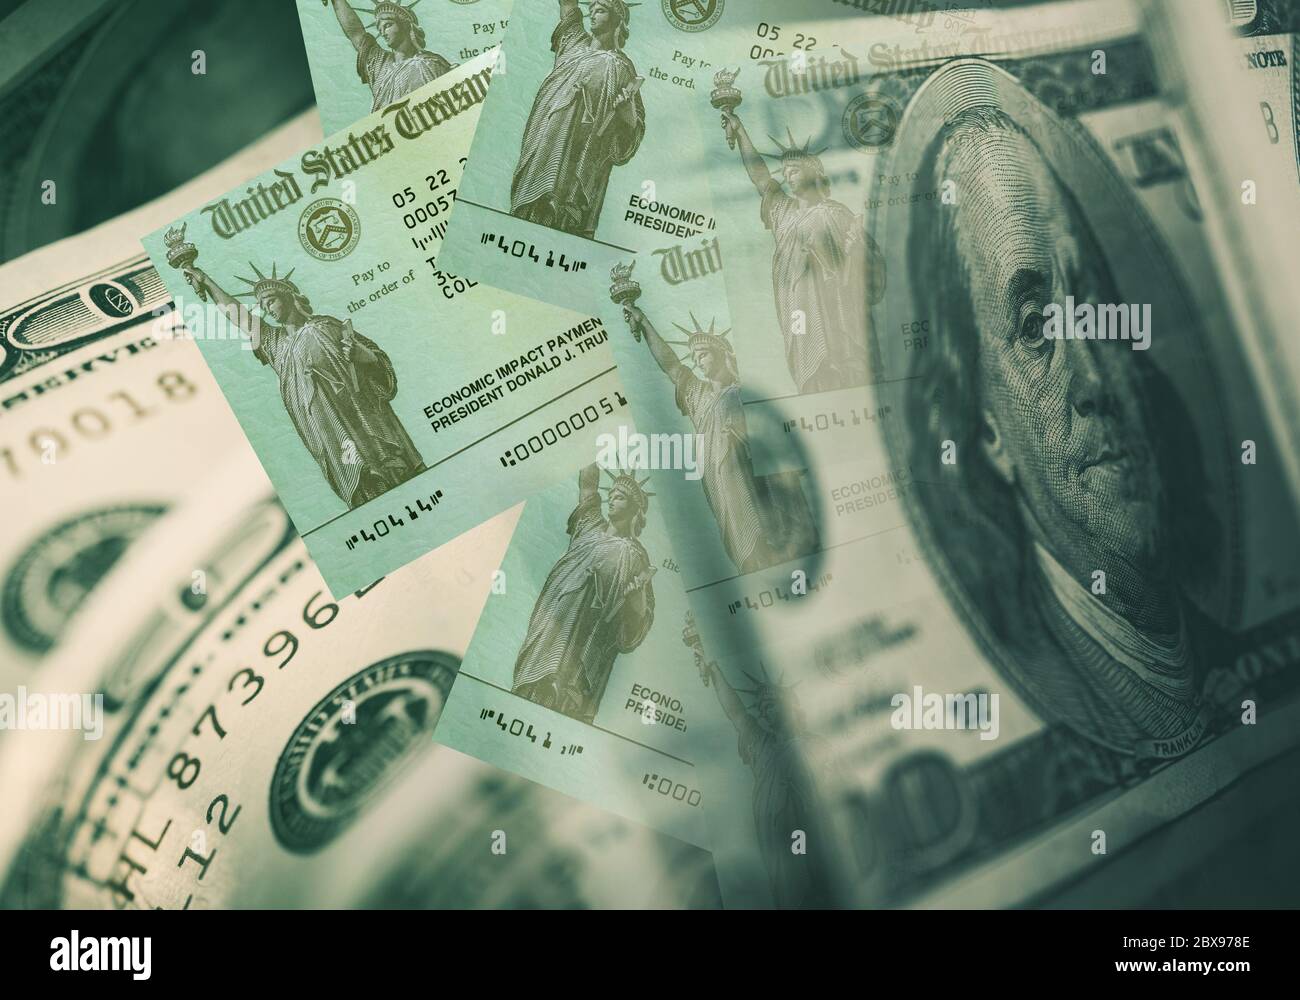 Concetto di assegni di pagamento a impatto economico. Stati Uniti d'America Virus Outbreak Cash Relief. Assegni e banconote in dollari. Foto Stock